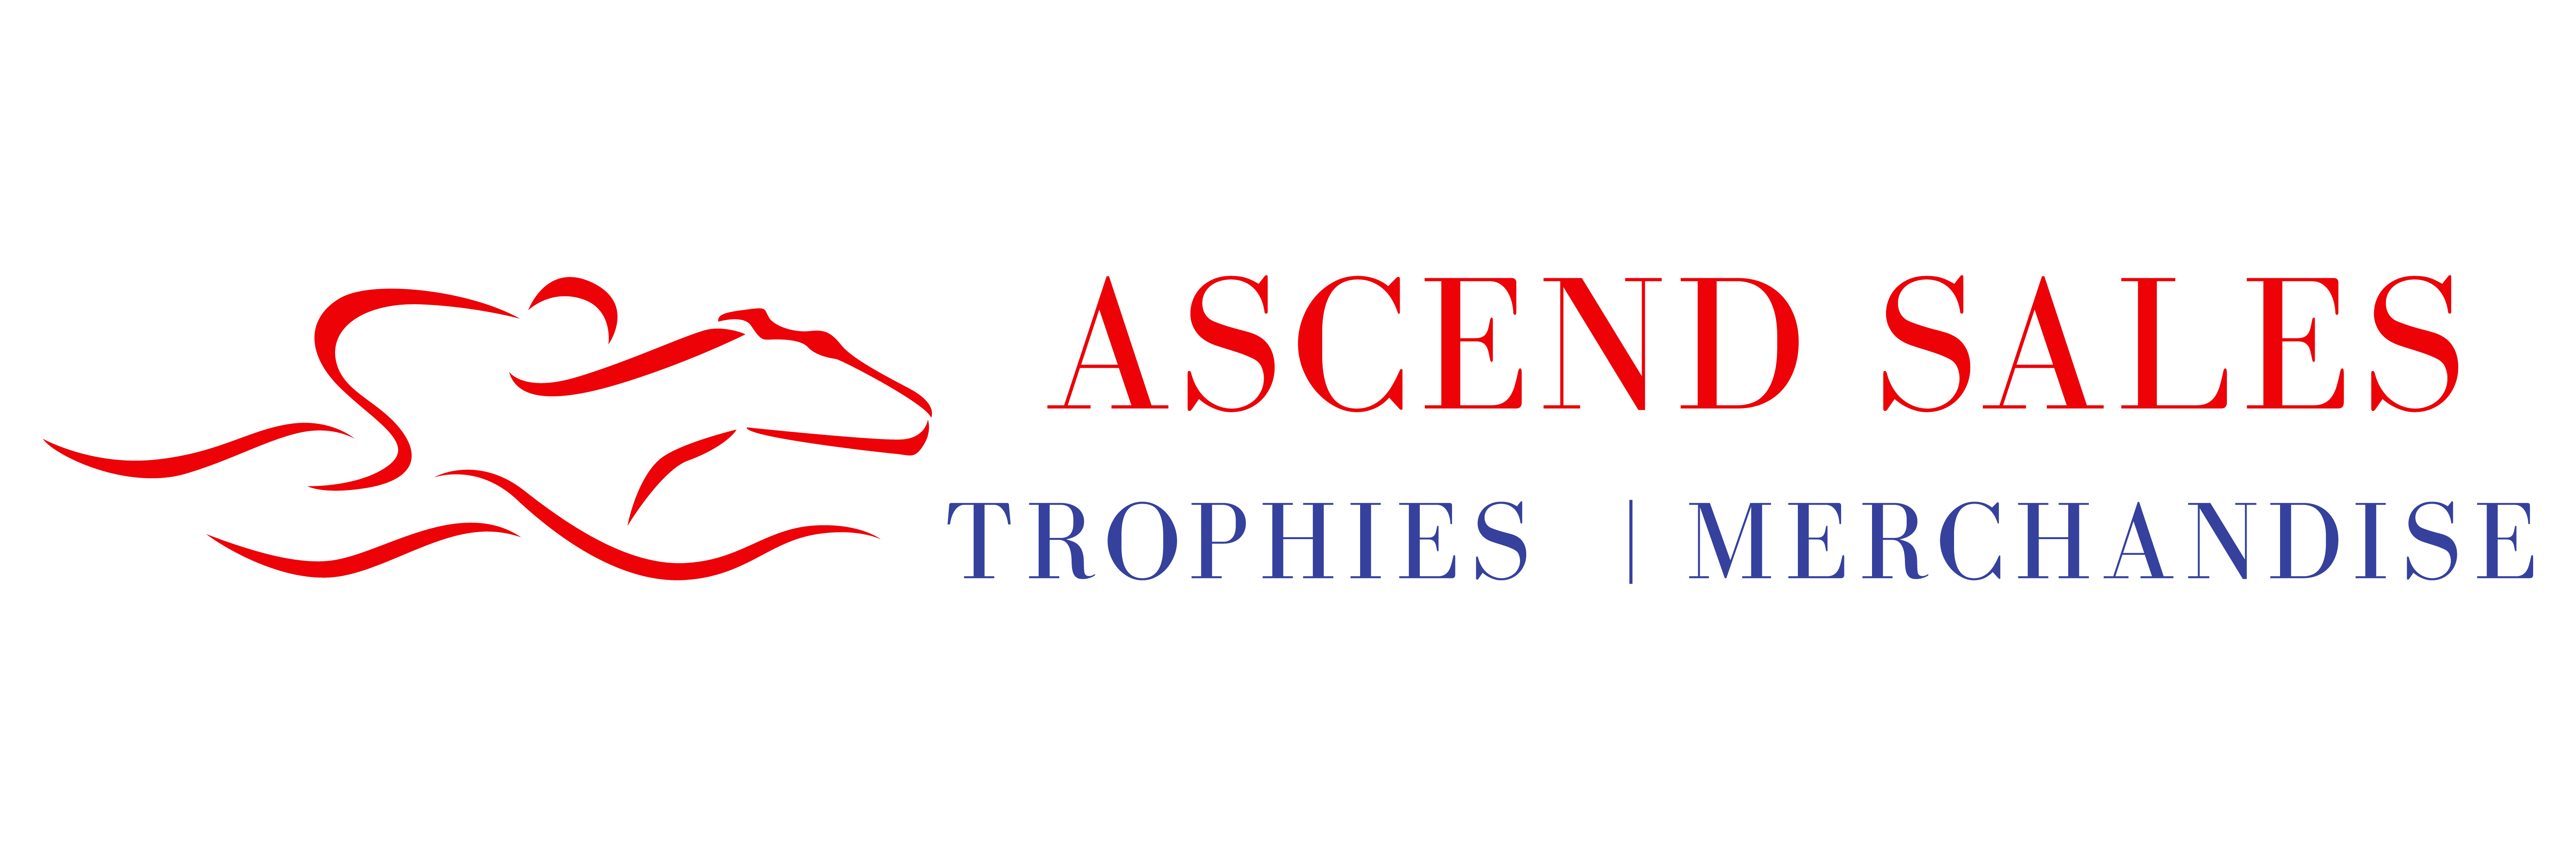 Ascend Sales